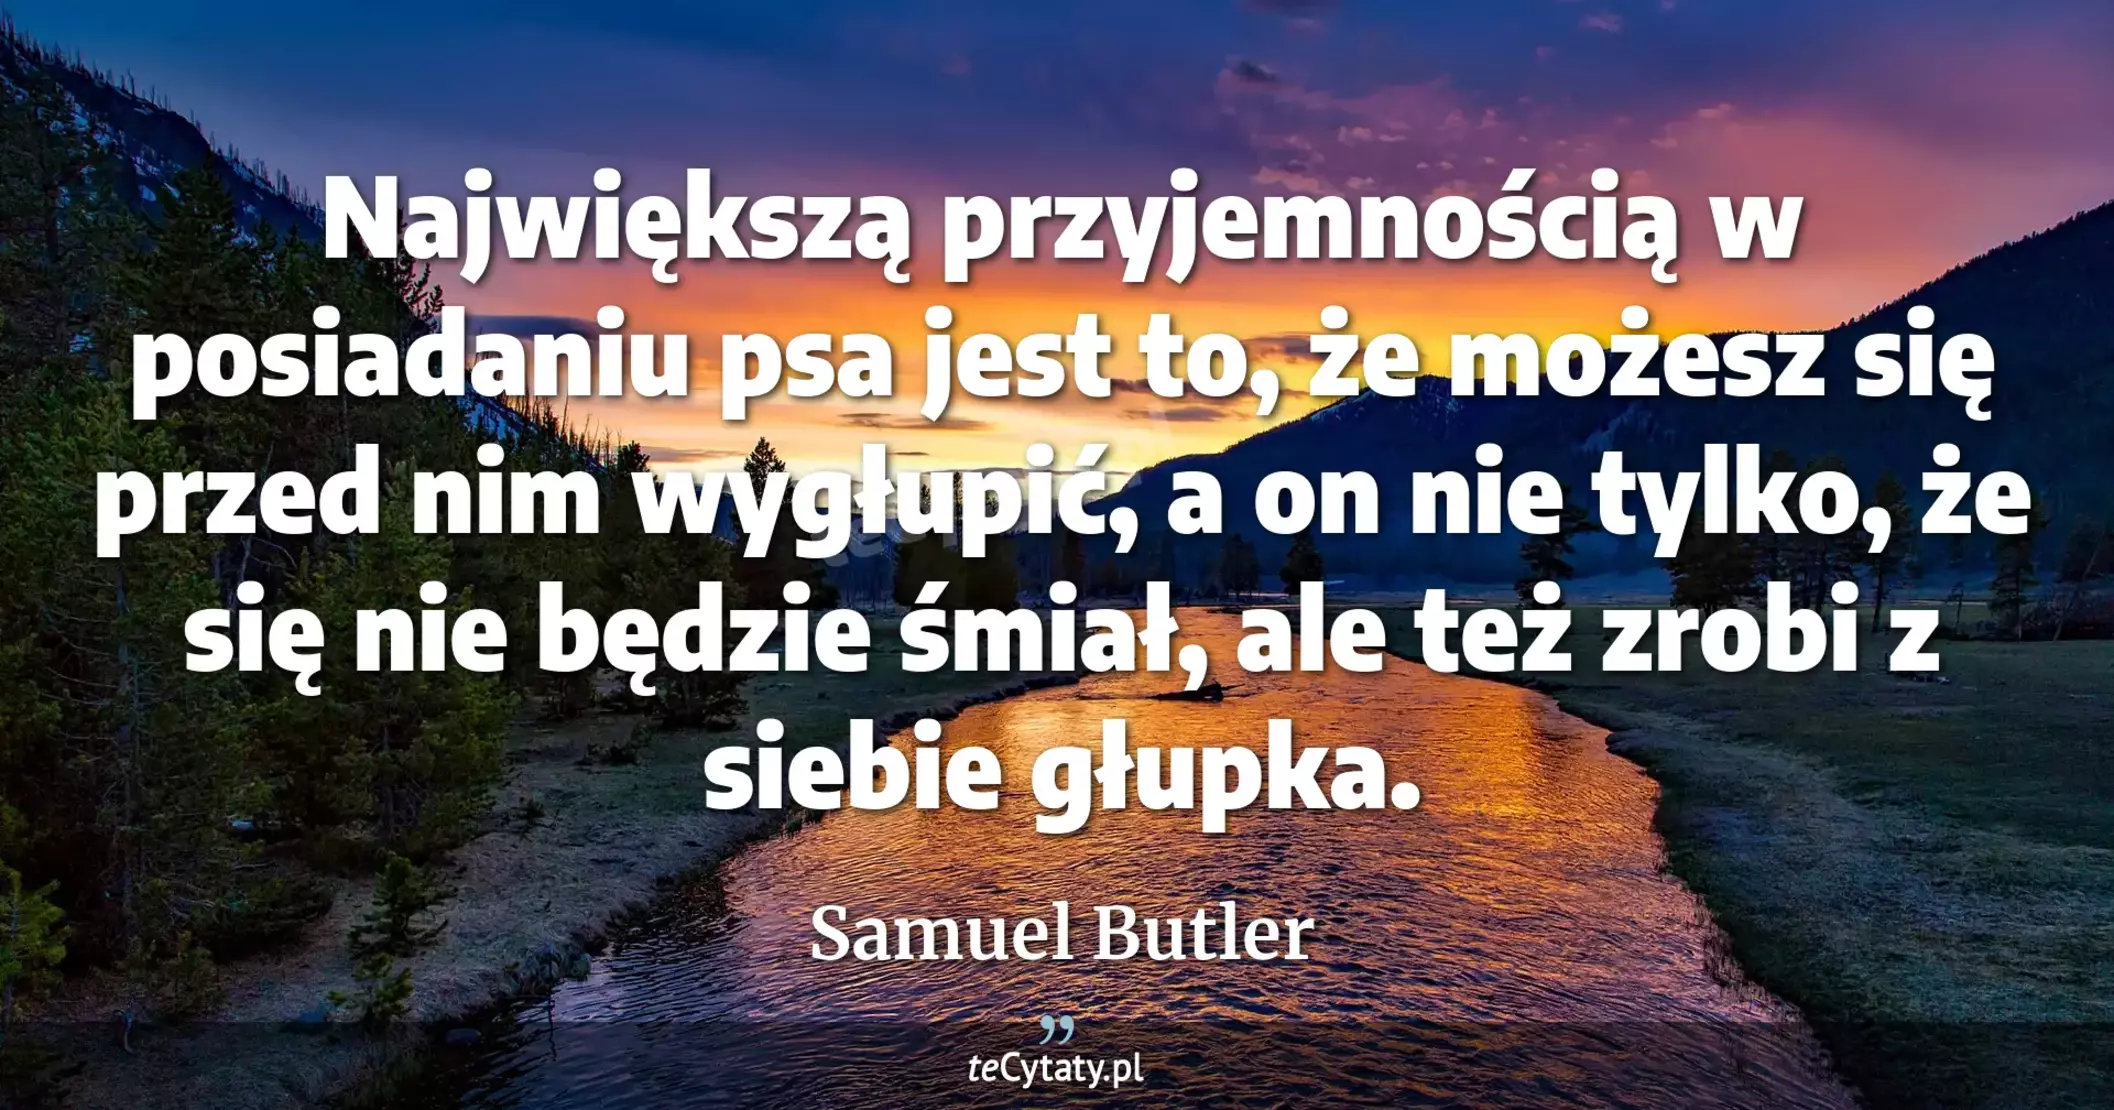 Największą przyjemnością w posiadaniu psa jest to, że możesz się przed nim wygłupić, a on nie tylko, że się nie będzie śmiał, ale też zrobi z siebie głupka. - Samuel Butler